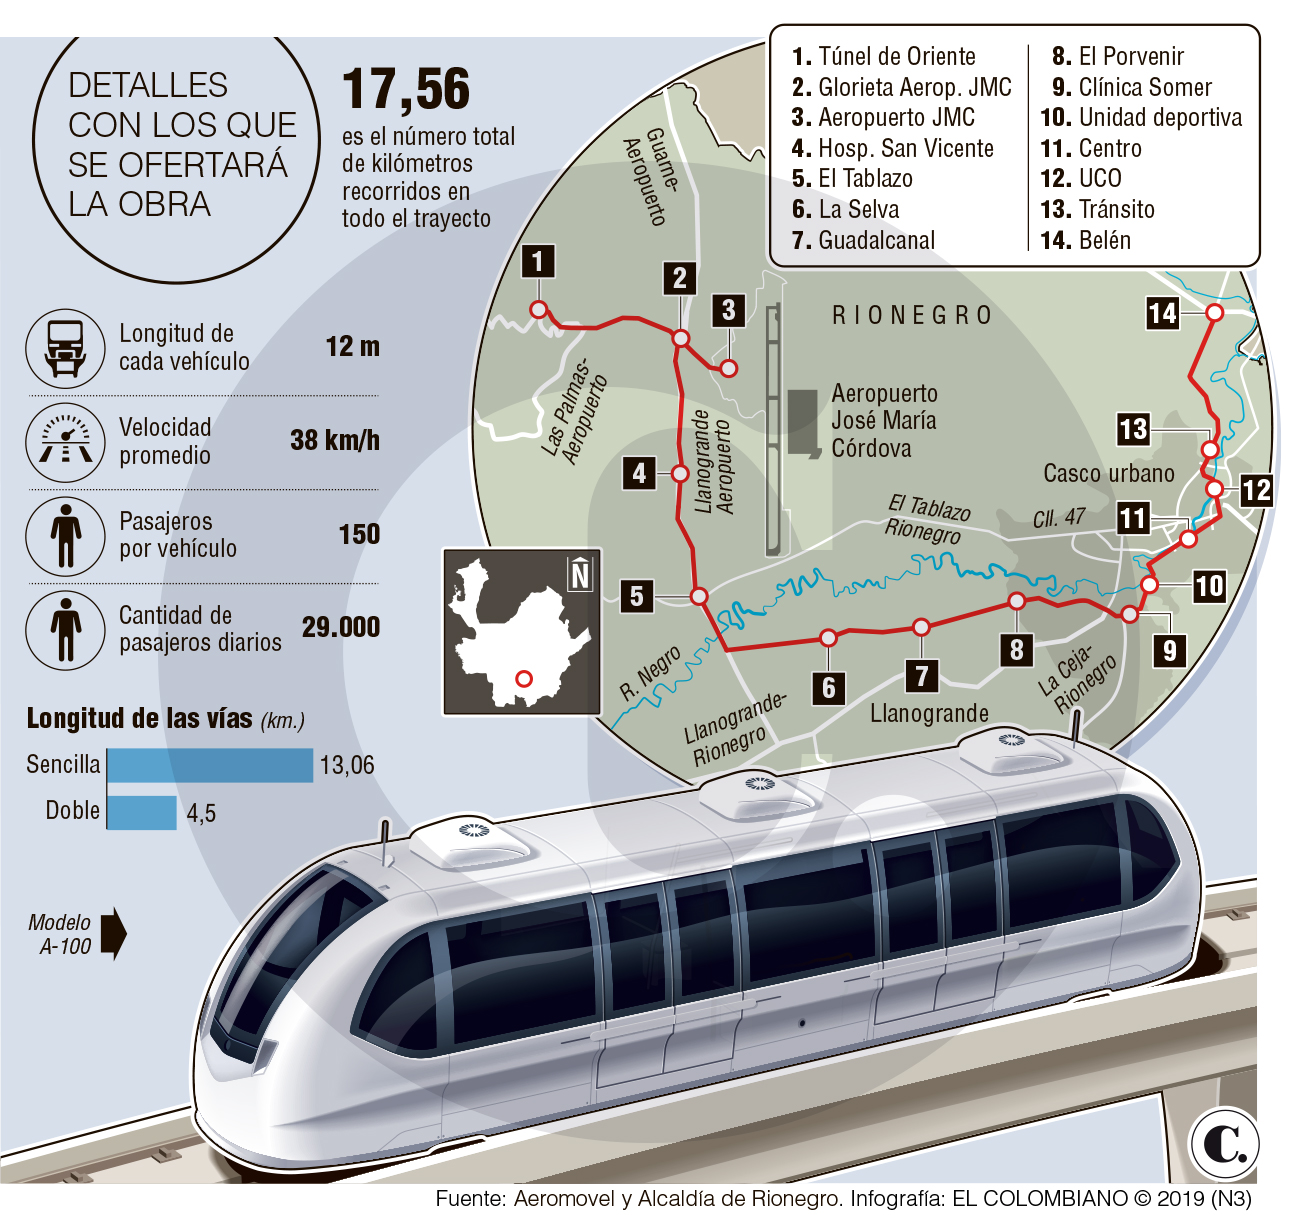 Tren de Rionegro prepara datos para salir a licitación